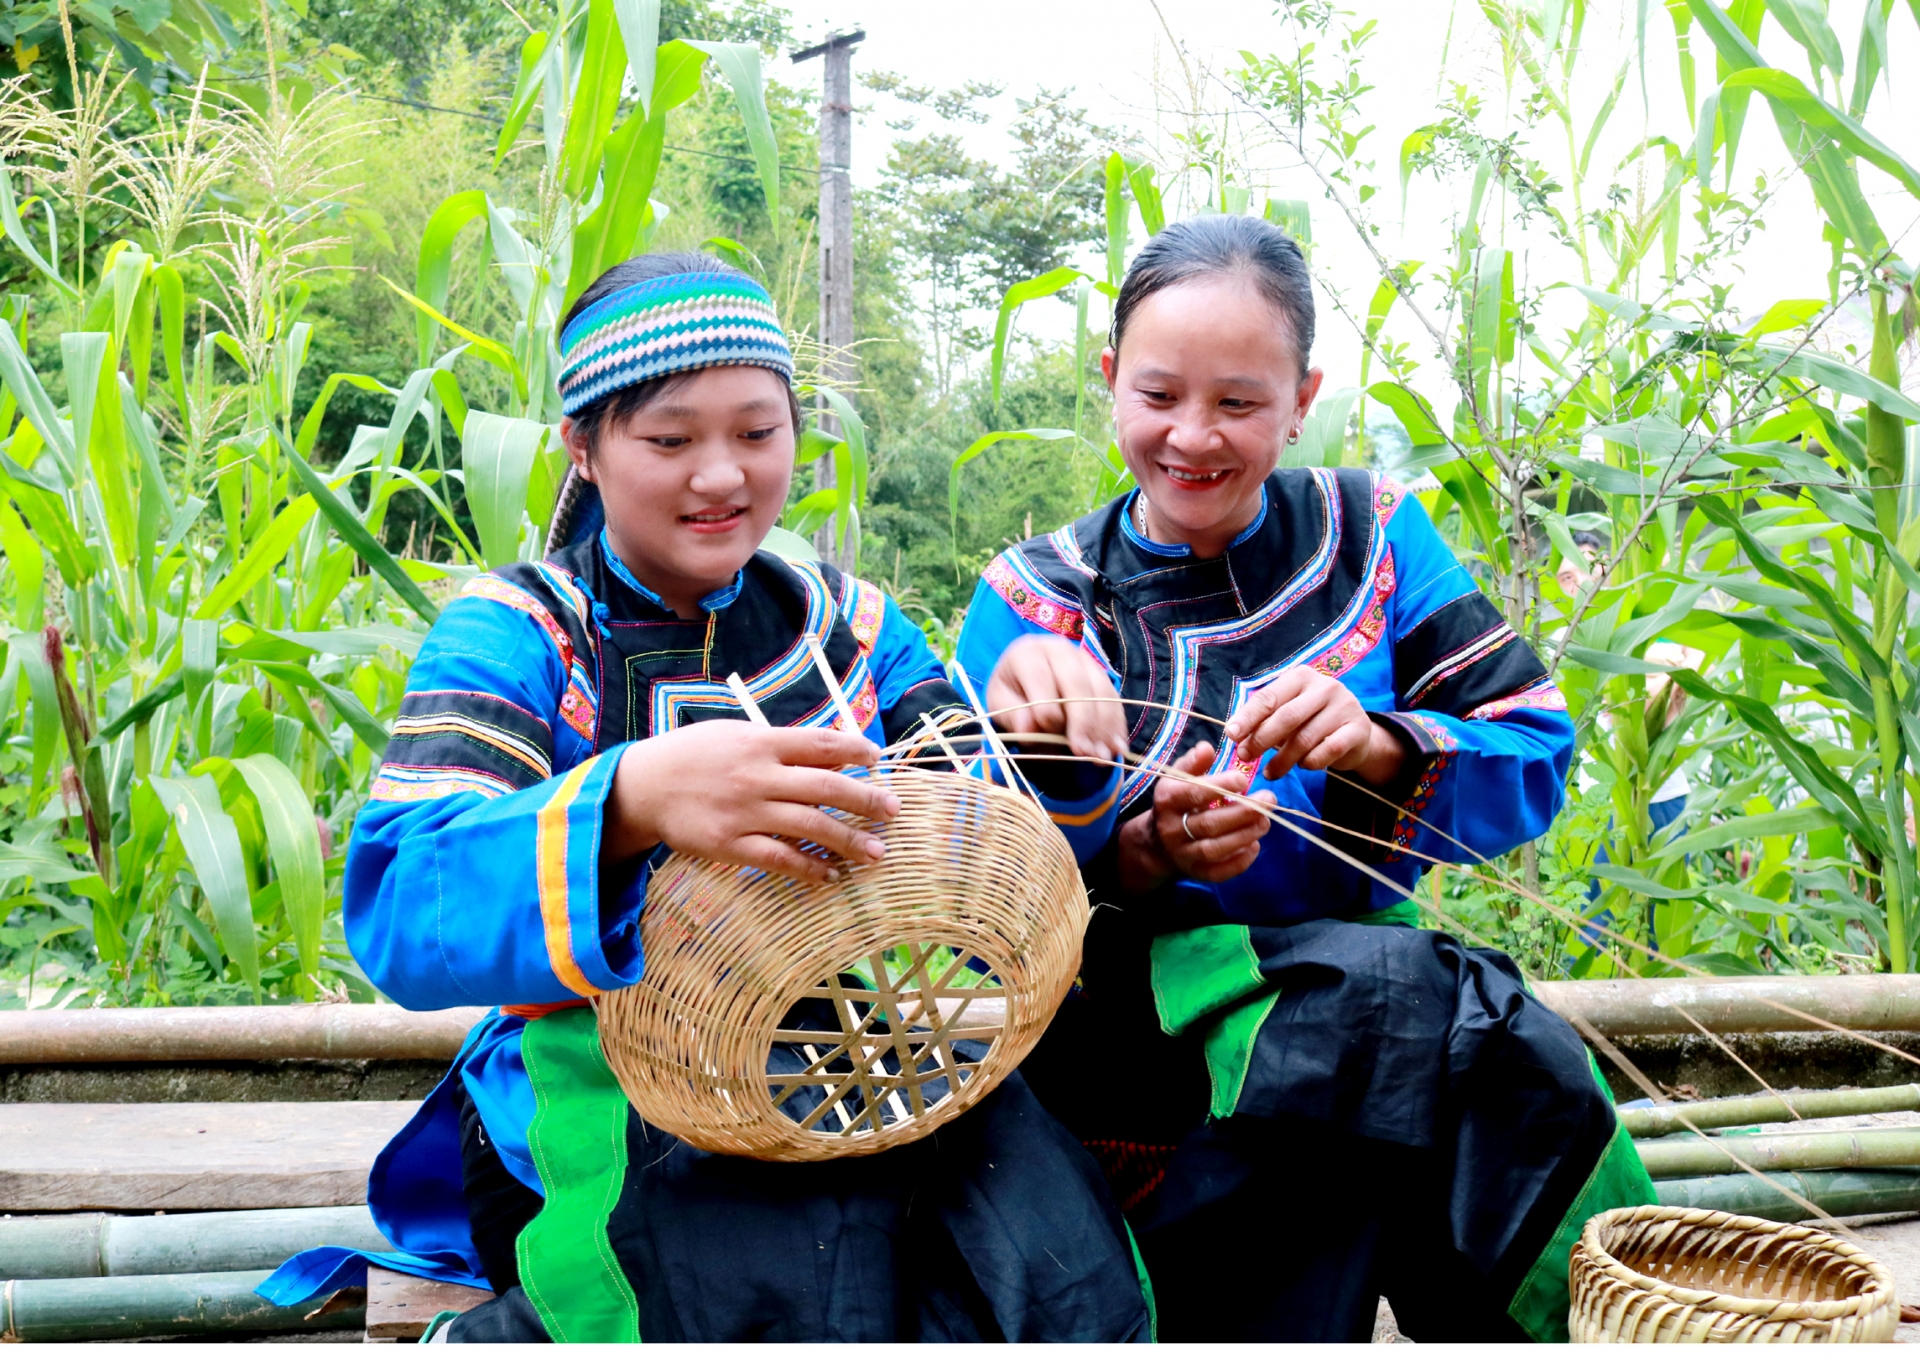 Nghề đan lát truyền thống của người Cờ Lao ở Sính Lủng (Đồng Văn) góp phần quan trọng trong việc cải thiện đời sống vật chất và tinh thần của cộng đồng các dân tộc thiểu số trên Cao nguyên đá. Ảnh: PV